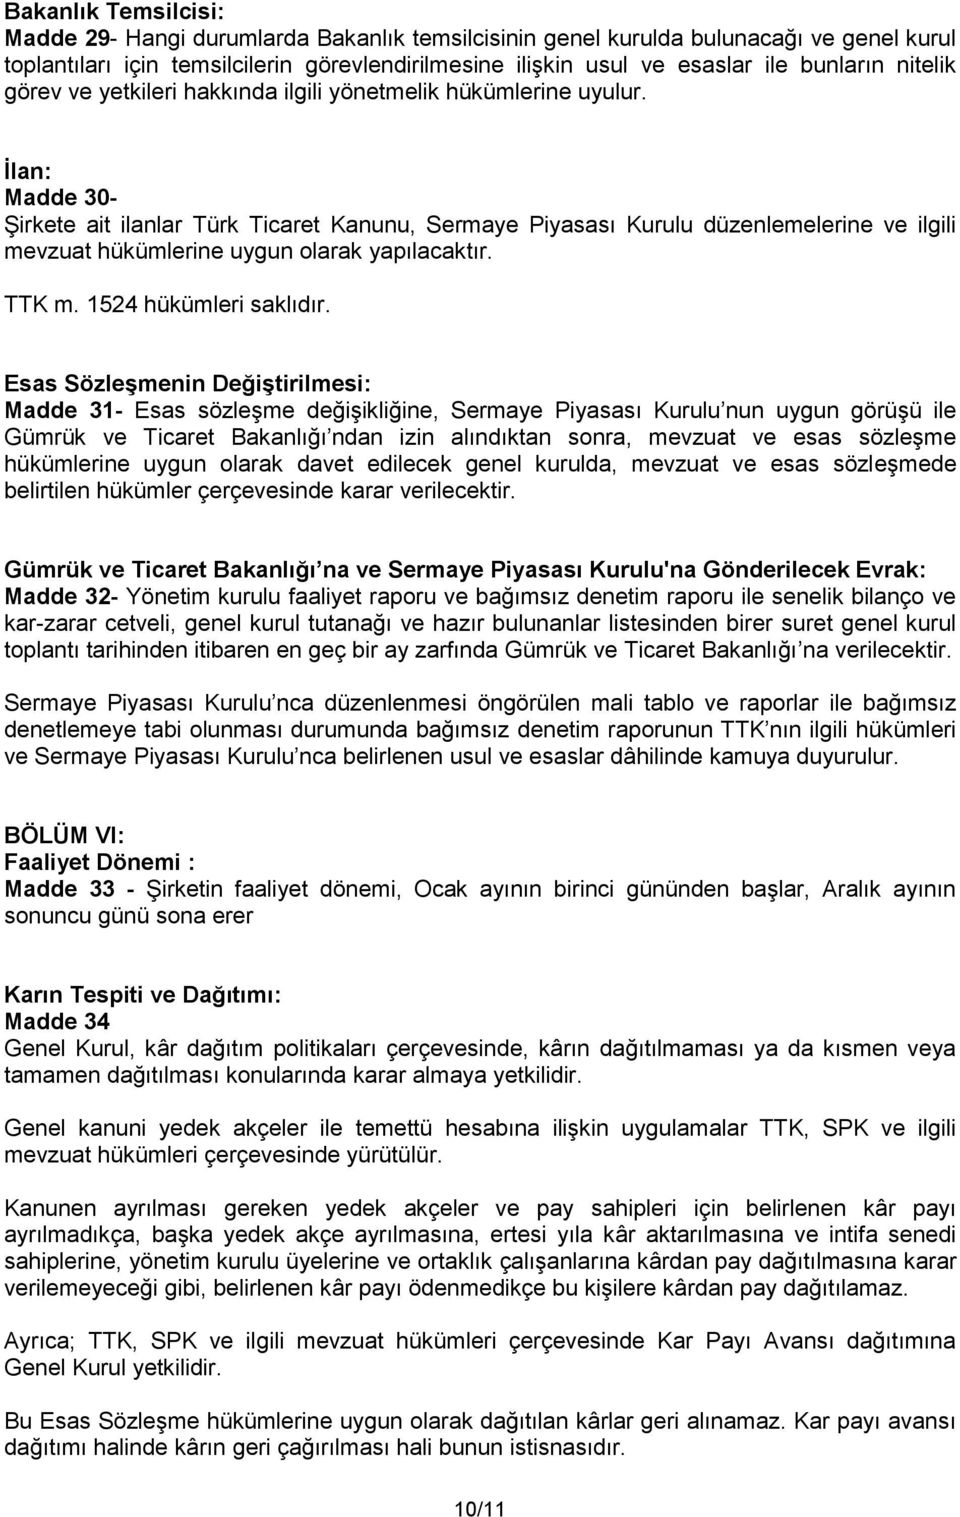 İlan: Madde 30- Şirkete ait ilanlar Türk Ticaret Kanunu, Sermaye Piyasası Kurulu düzenlemelerine ve ilgili mevzuat hükümlerine uygun olarak yapılacaktır. TTK m. 1524 hükümleri saklıdır.